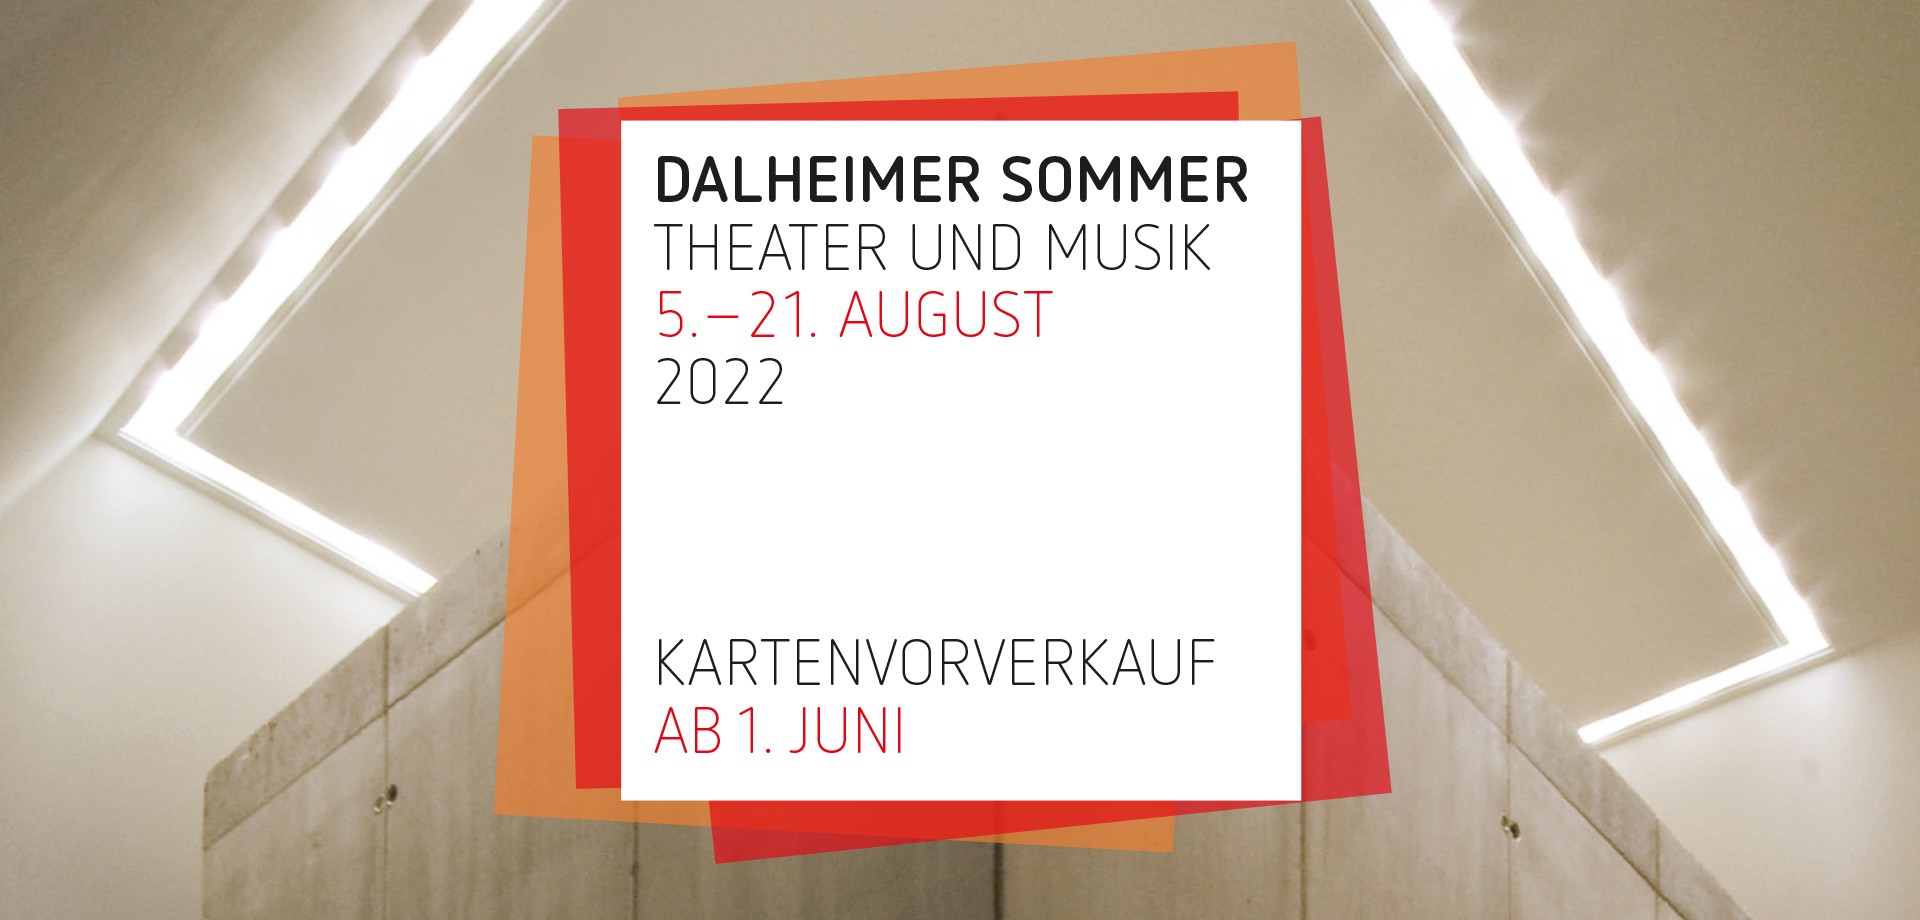 Titelmotiv des Dalheimer Sommers 2022: Theater und Musik, 5. bis 21. August 2022.